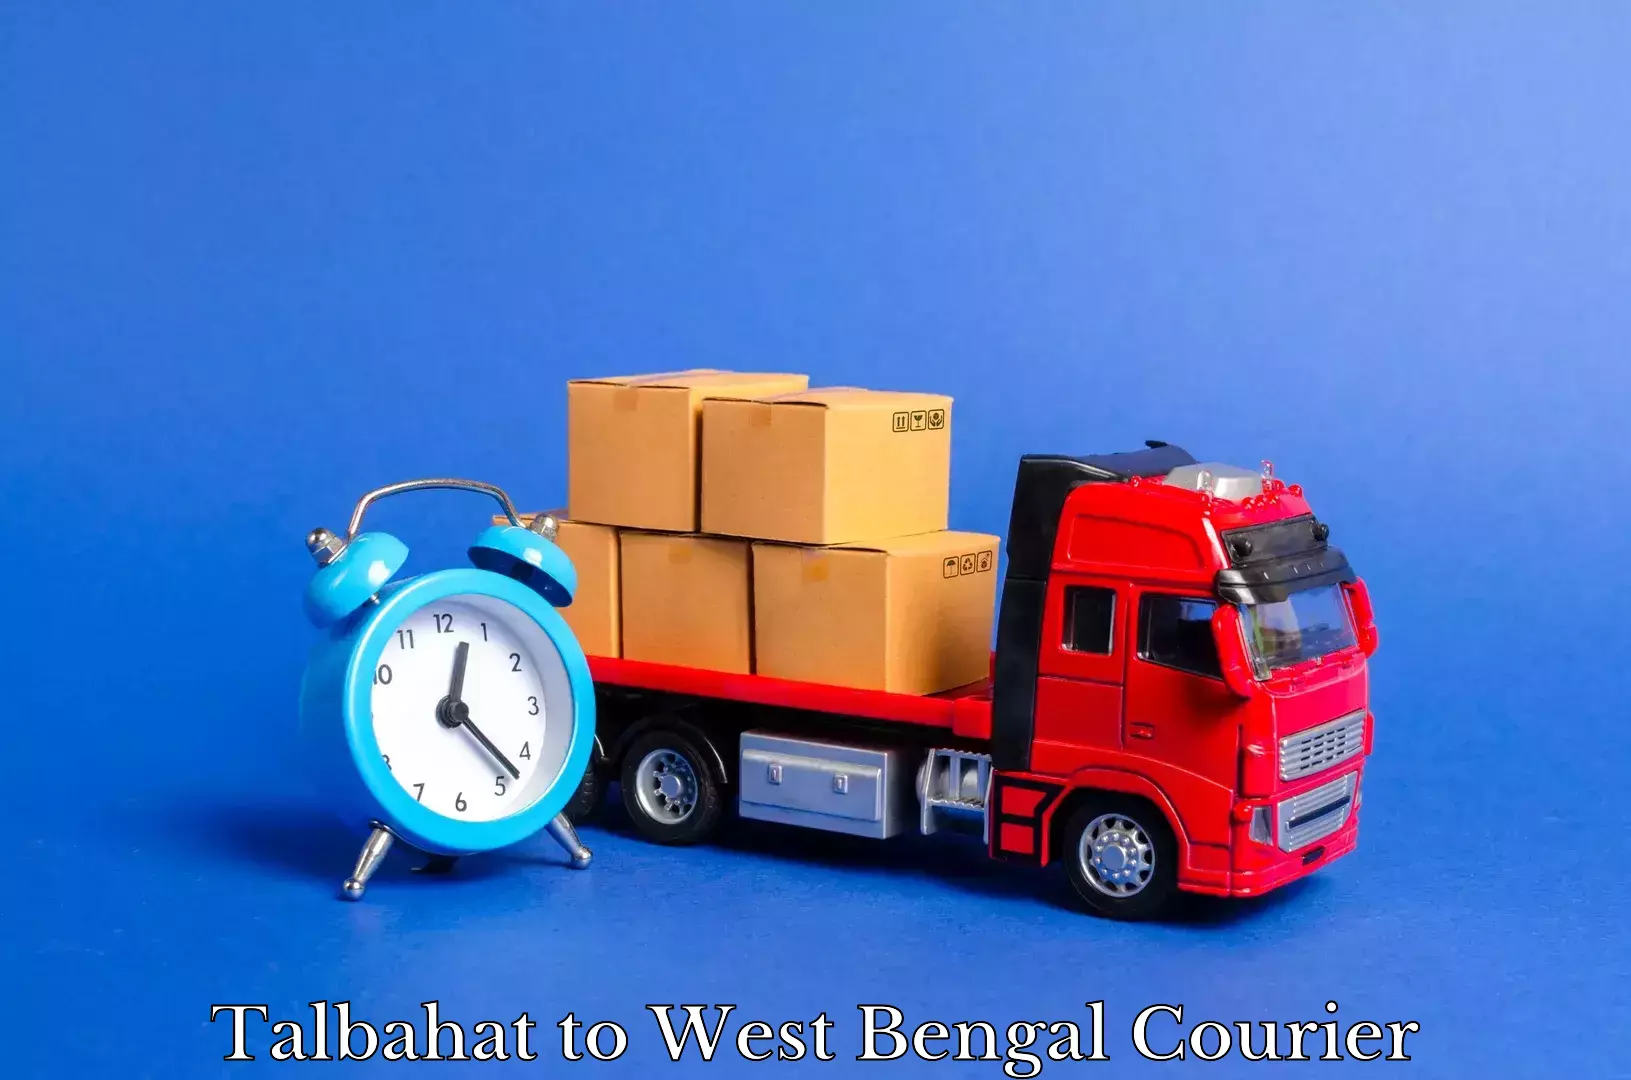 Furniture moving assistance Talbahat to Binnaguri